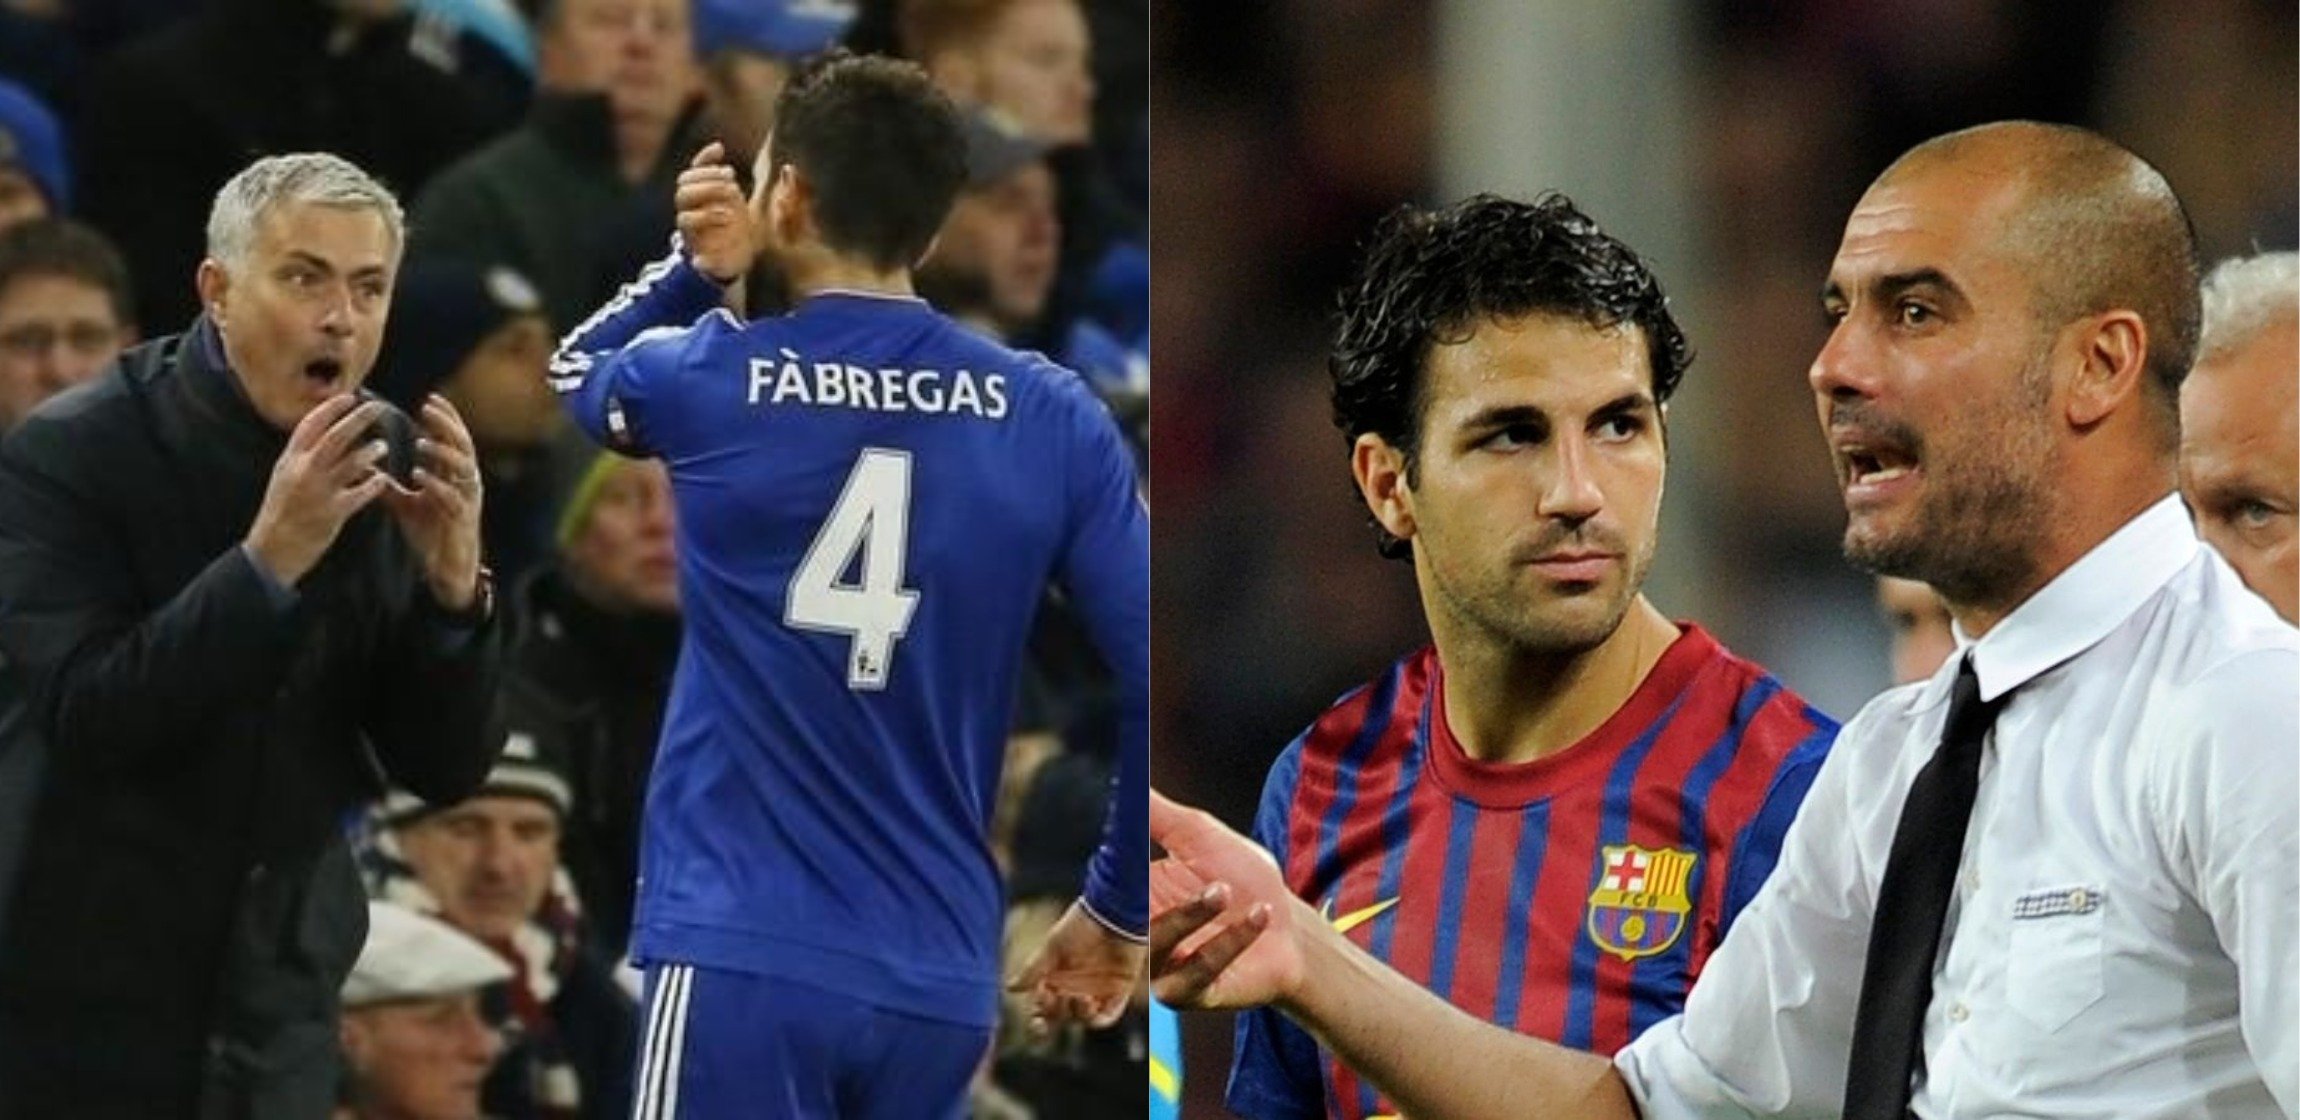 Qui est le meilleur entre Mourinho et Guardiola ? Le choix surprenant de Cesc Fabregas